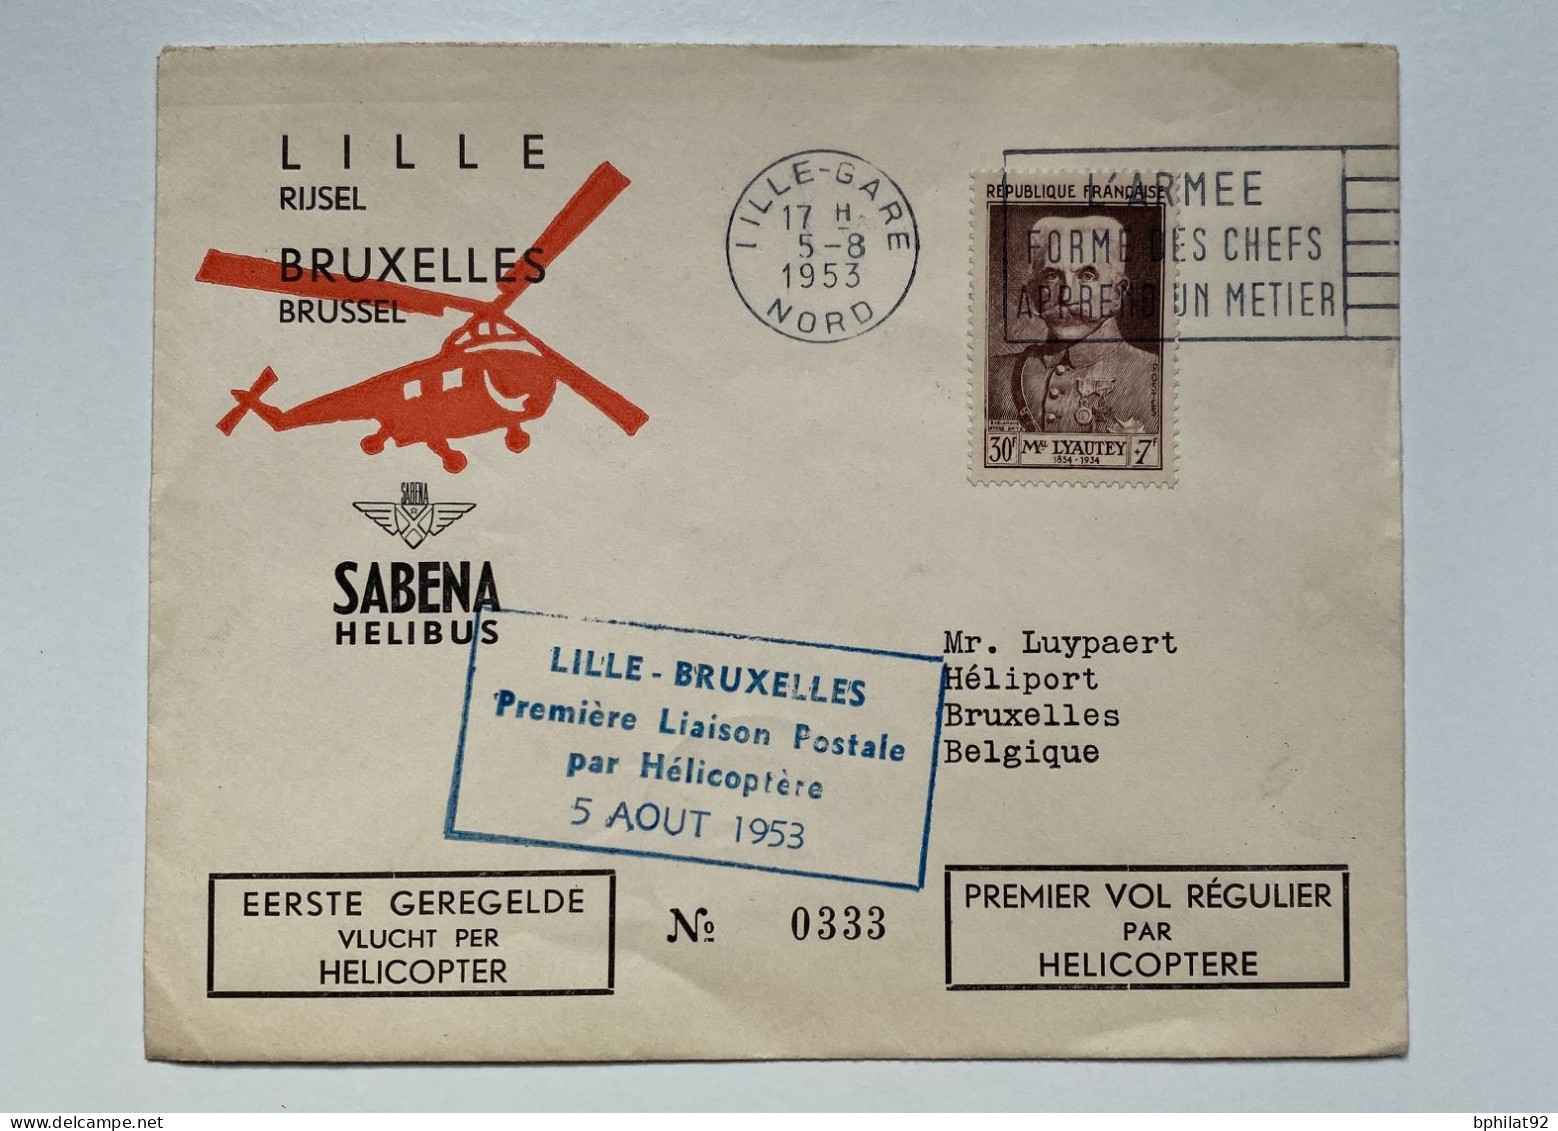 !!! BELGIQUE, COMMEMO 1ER VOL RÉGULIER PAR HÉLICOPTÈRE VIA LA SABENA LILLE BRUXELLES 5/8/1953 - Briefe U. Dokumente